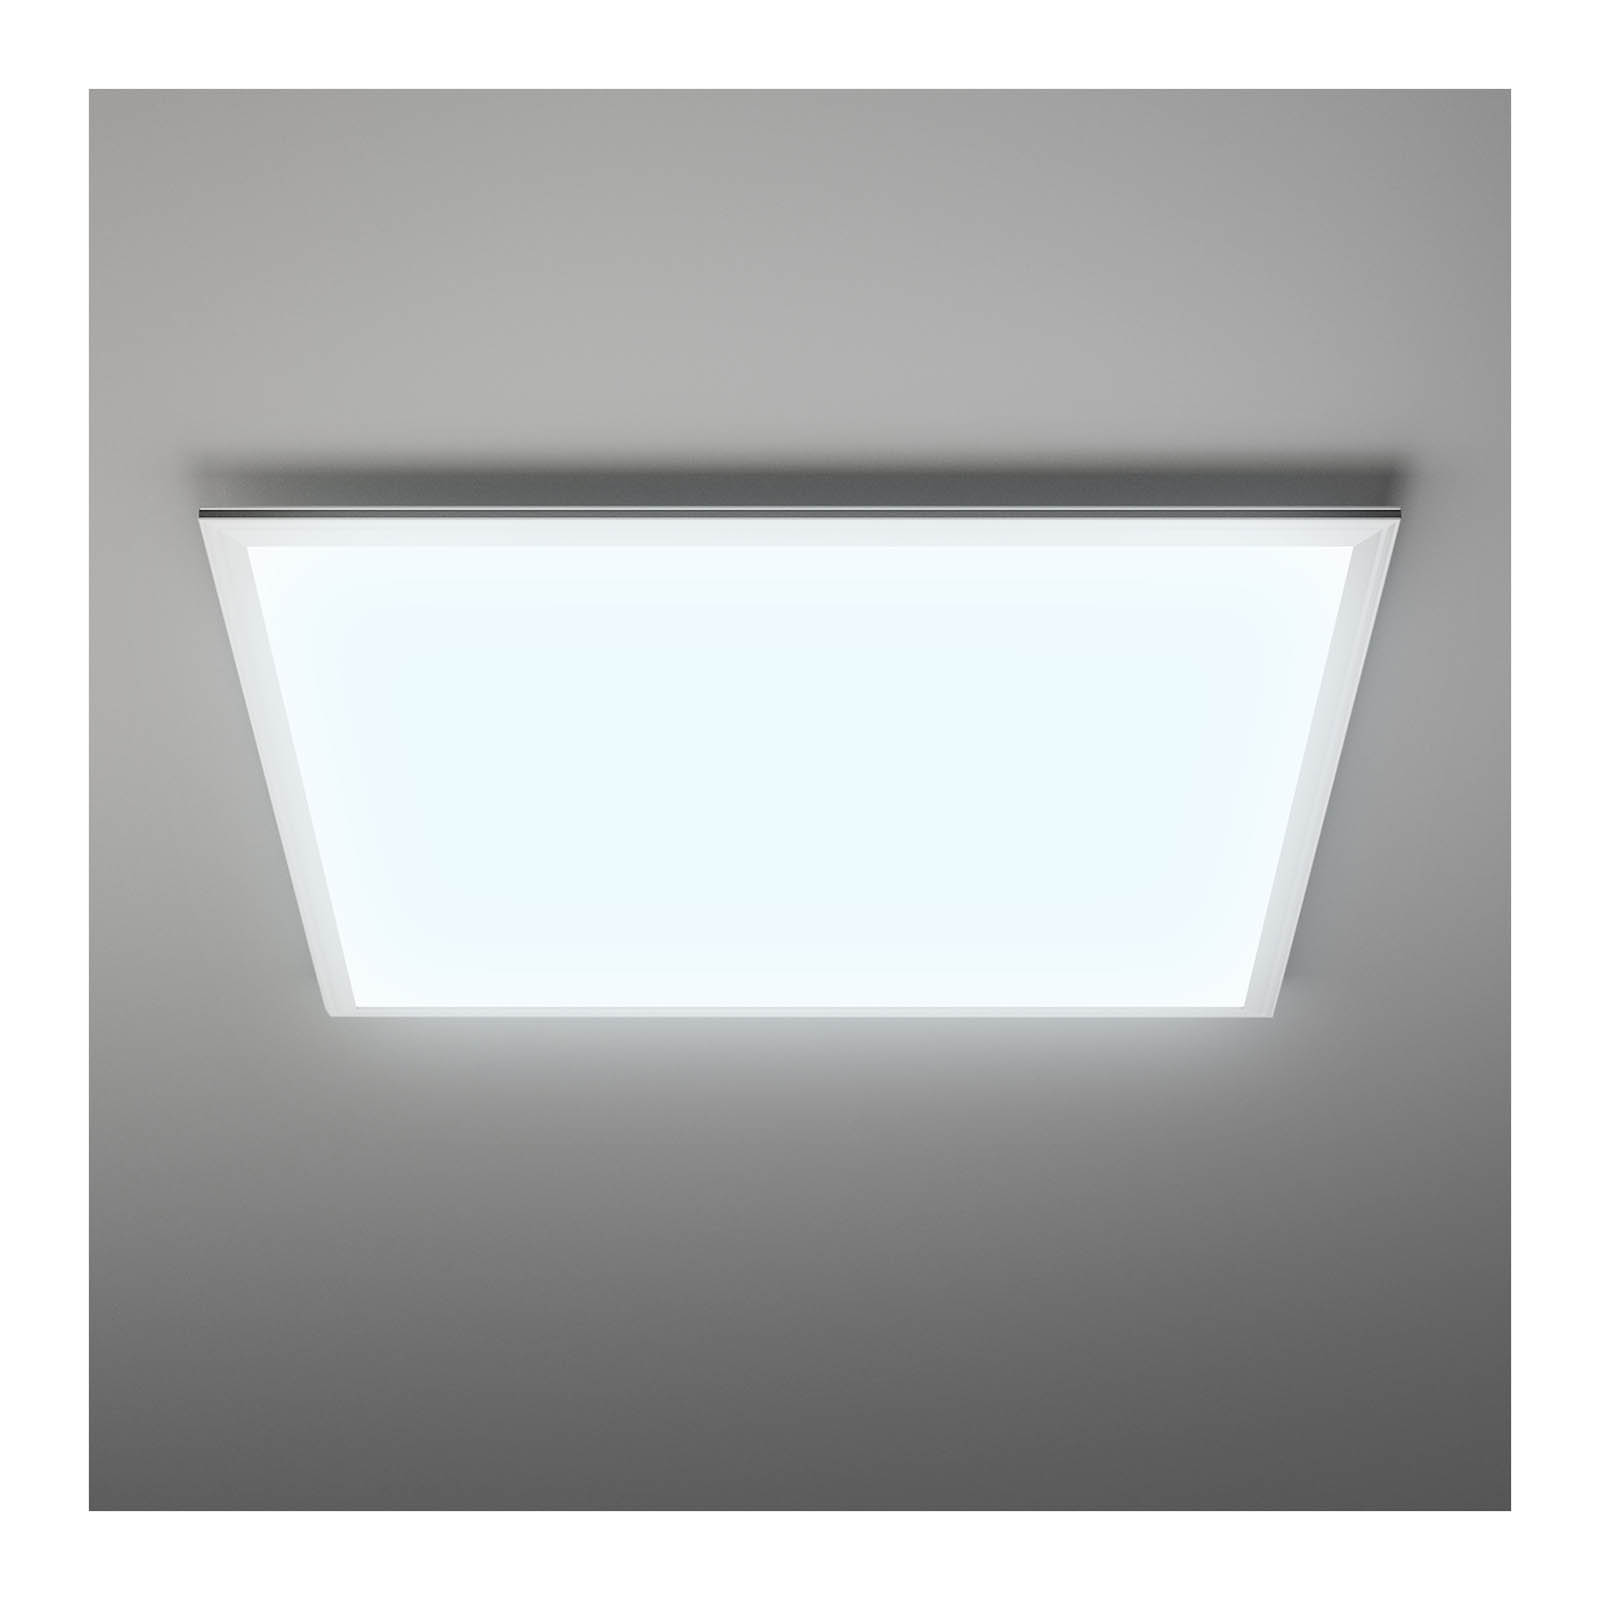 Pannello LED da soffitto - 62 x 62 cm - 48 W - 4.560 lm - 3 temperature del colore